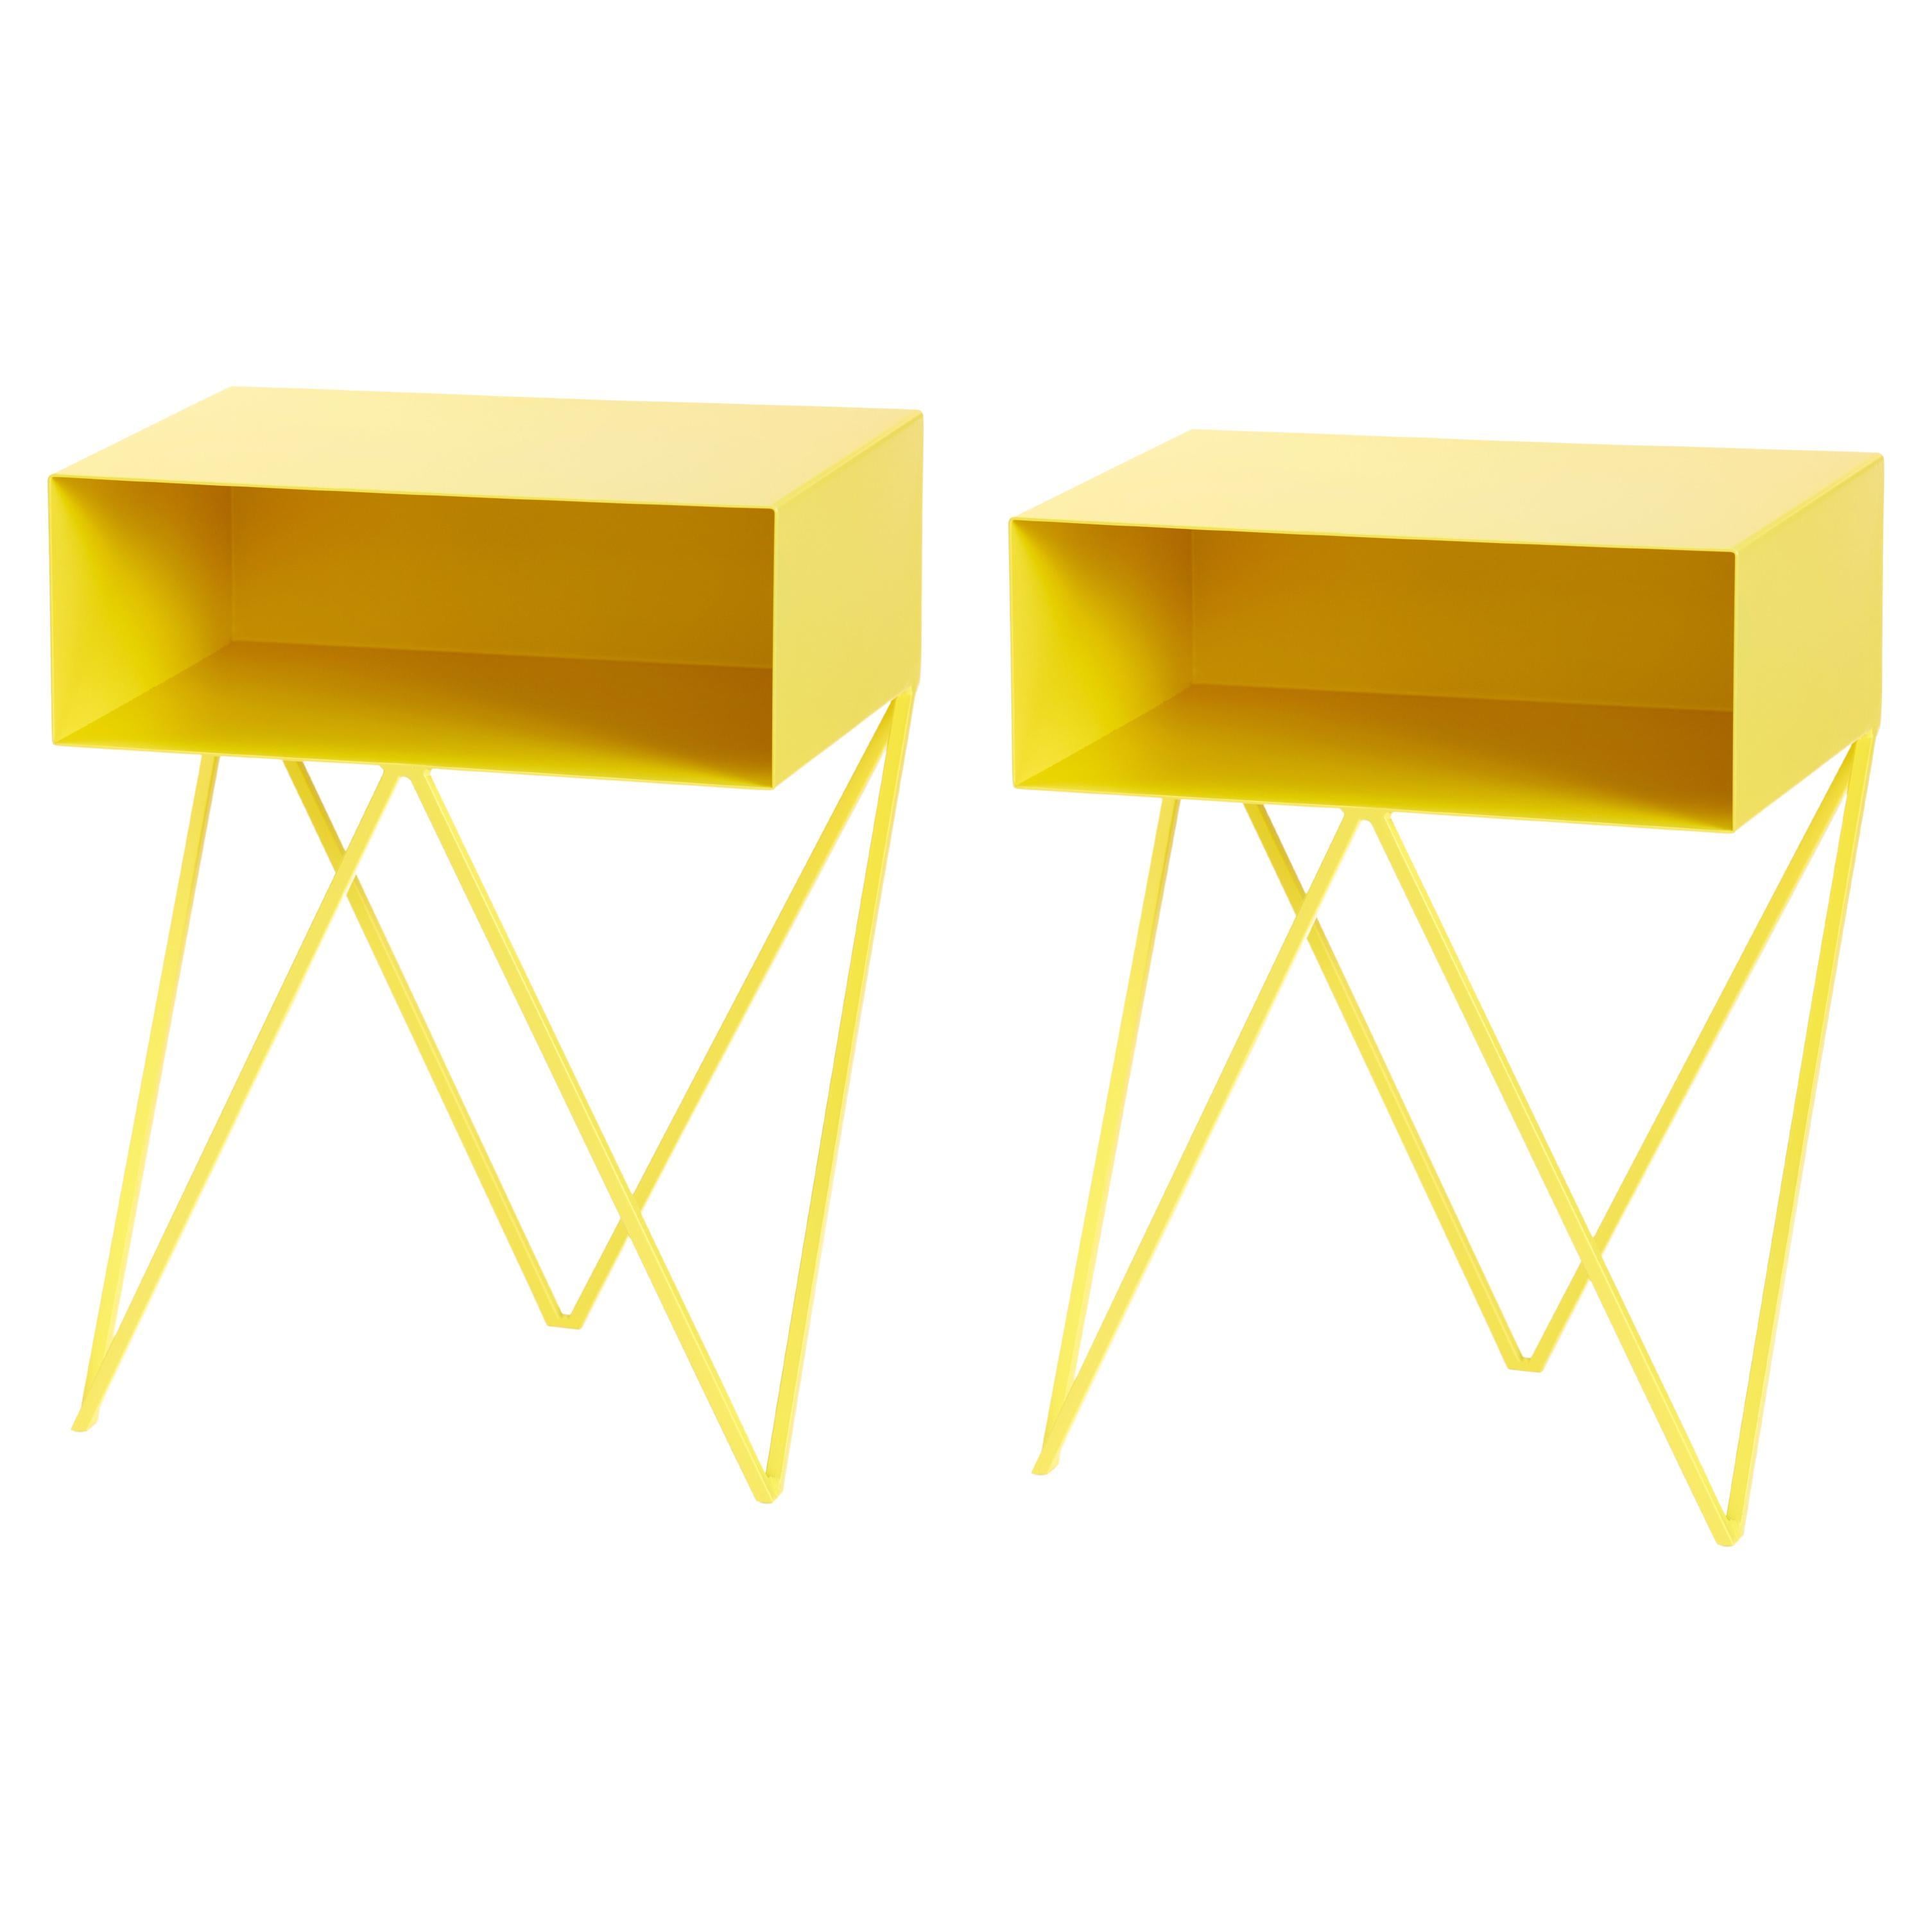 Pair of Yellow Steel Robot Bedside Tables / Nightstands